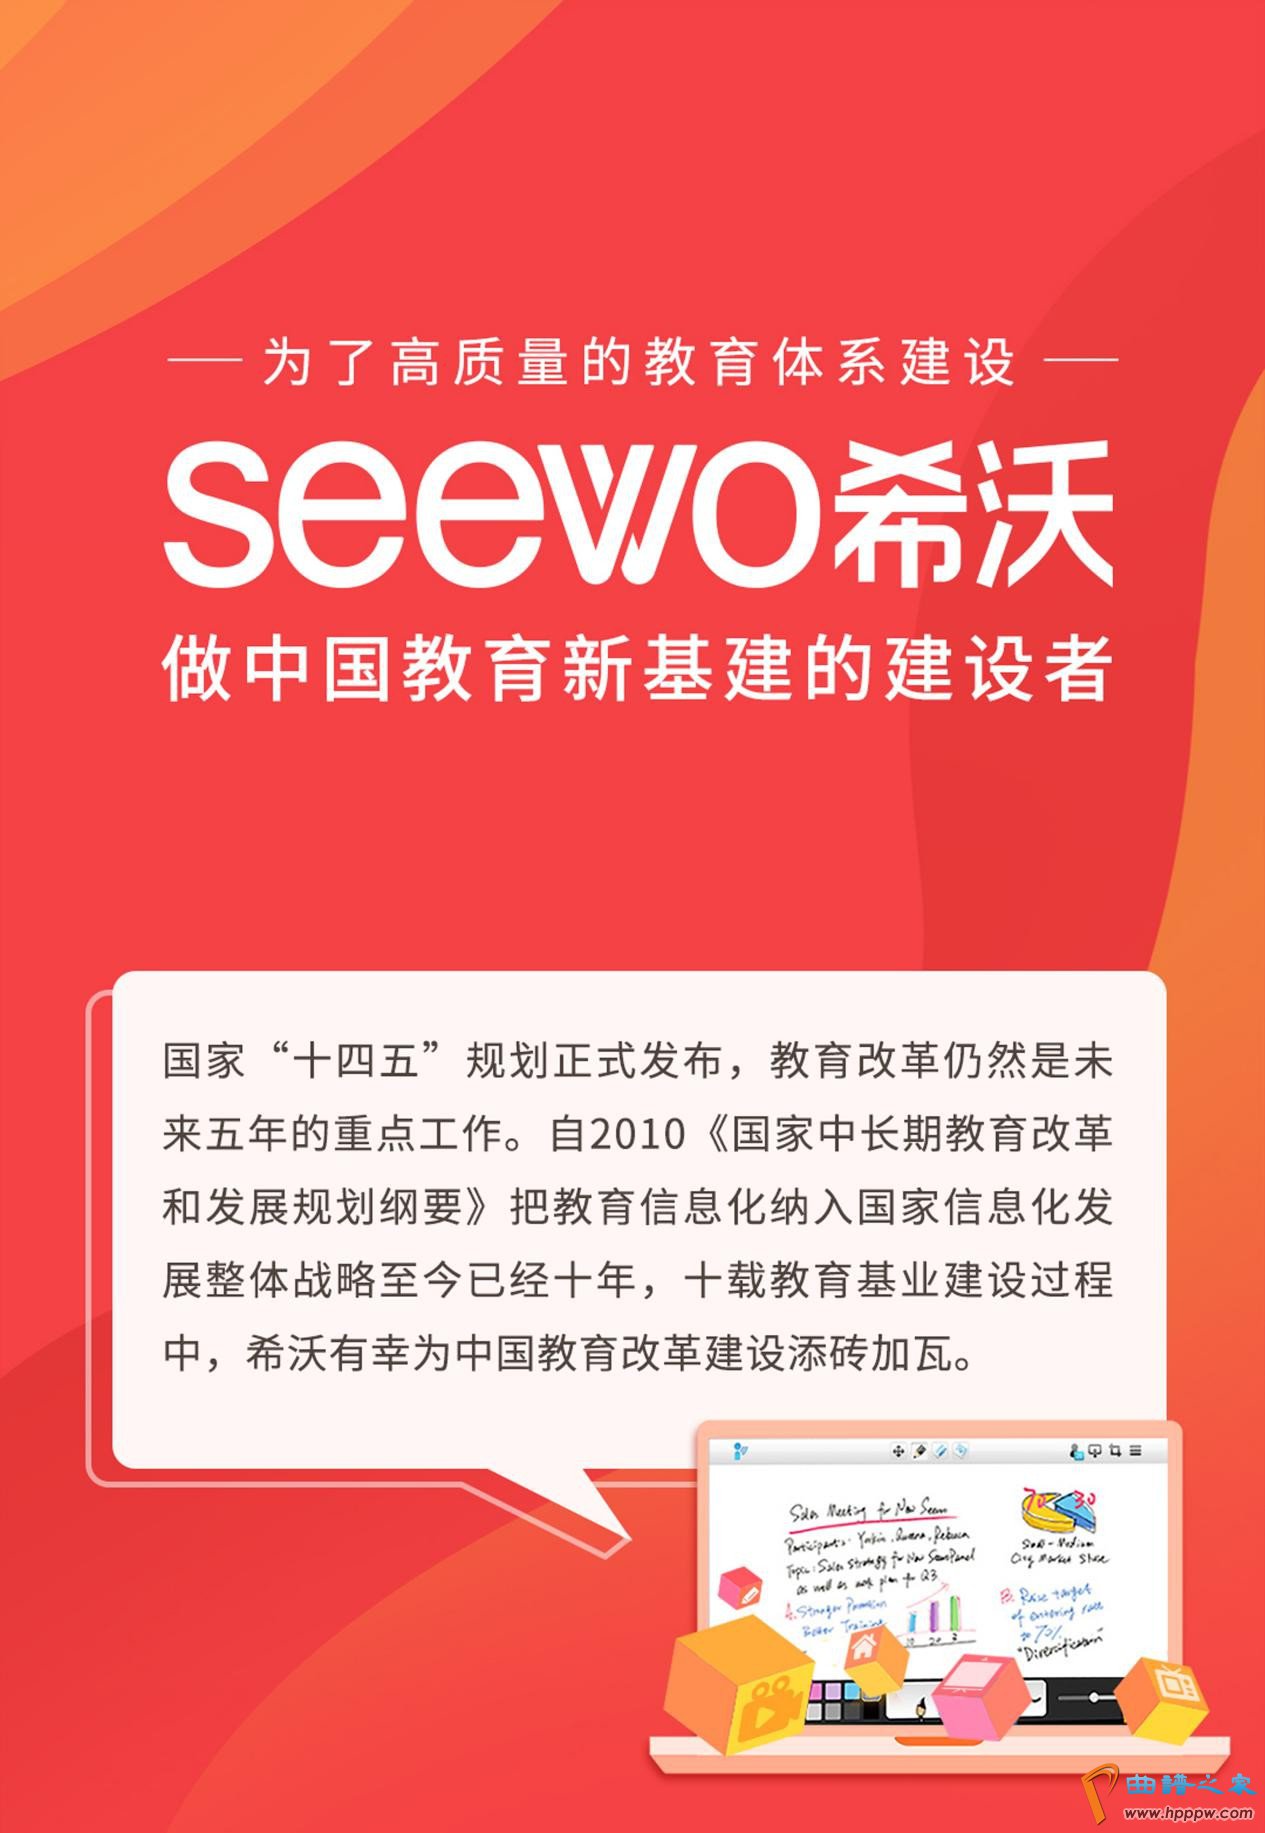 贝博app体育下载艾弗森:台湾新冠肺炎确诊病例6546例